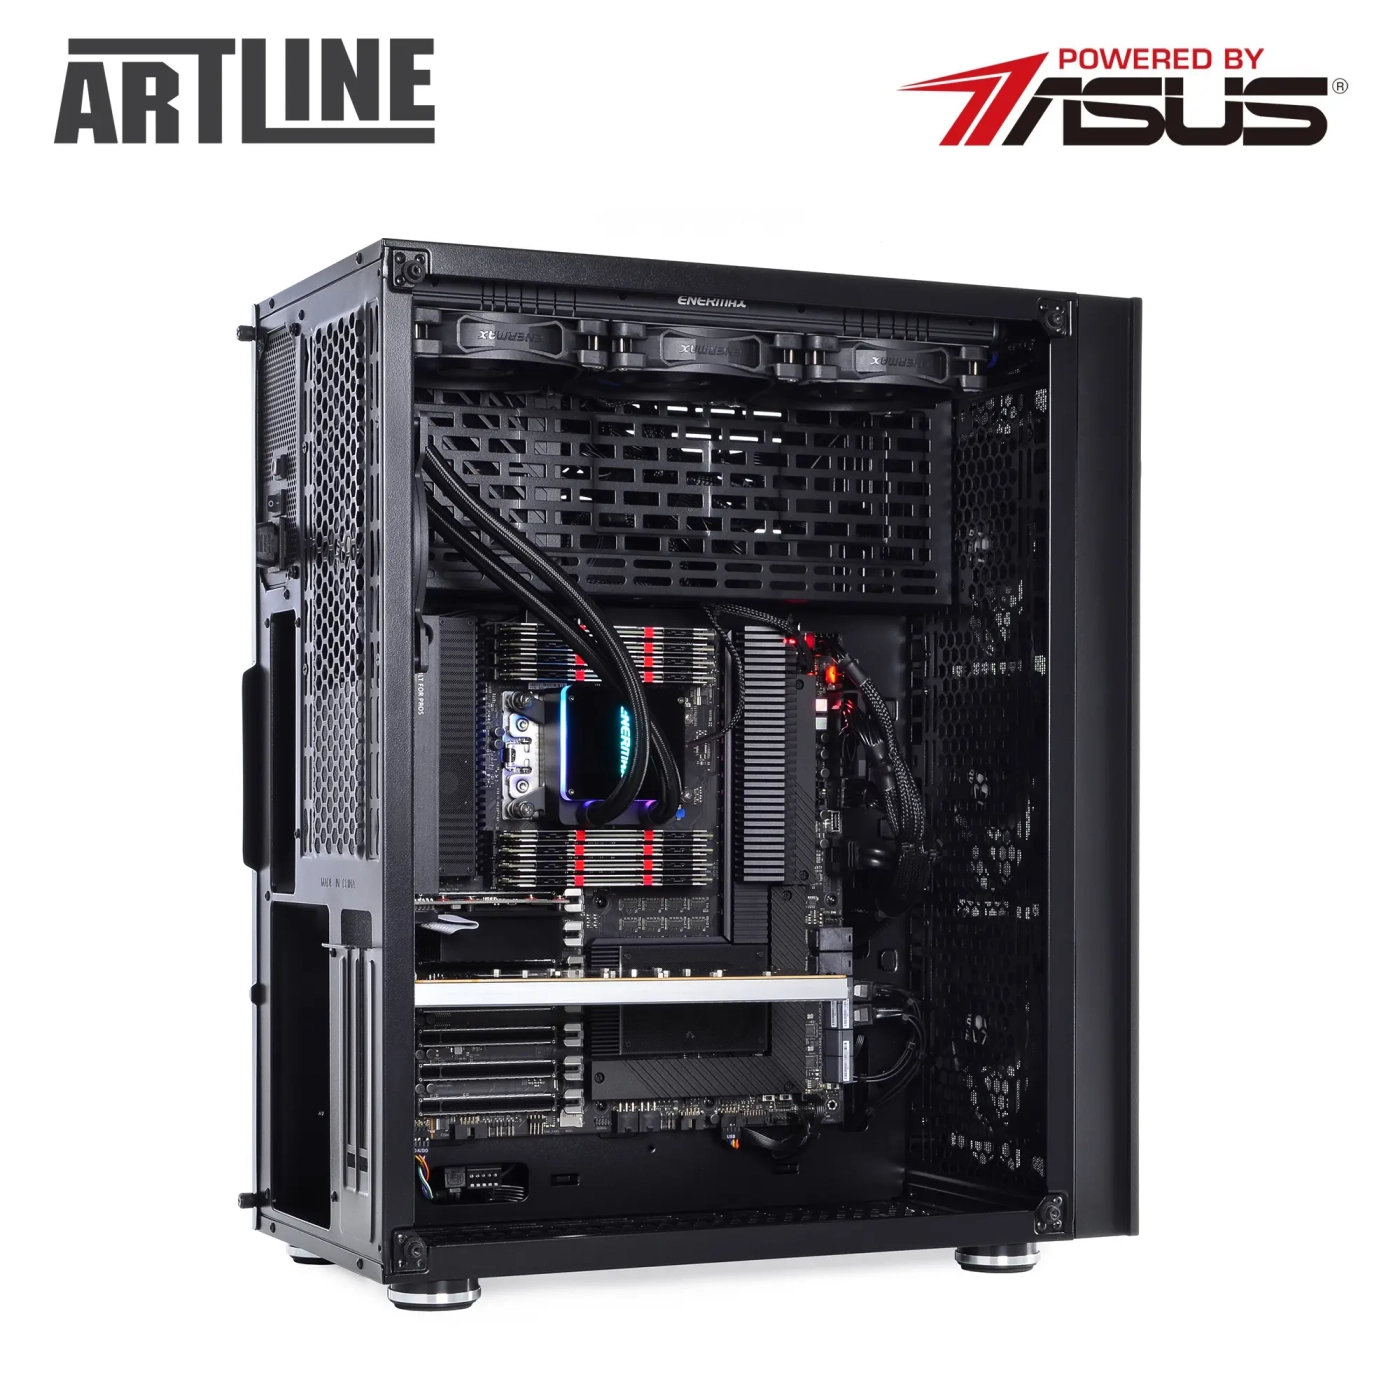 Купить Сервер ARTLINE Business T85v05 - фото 10